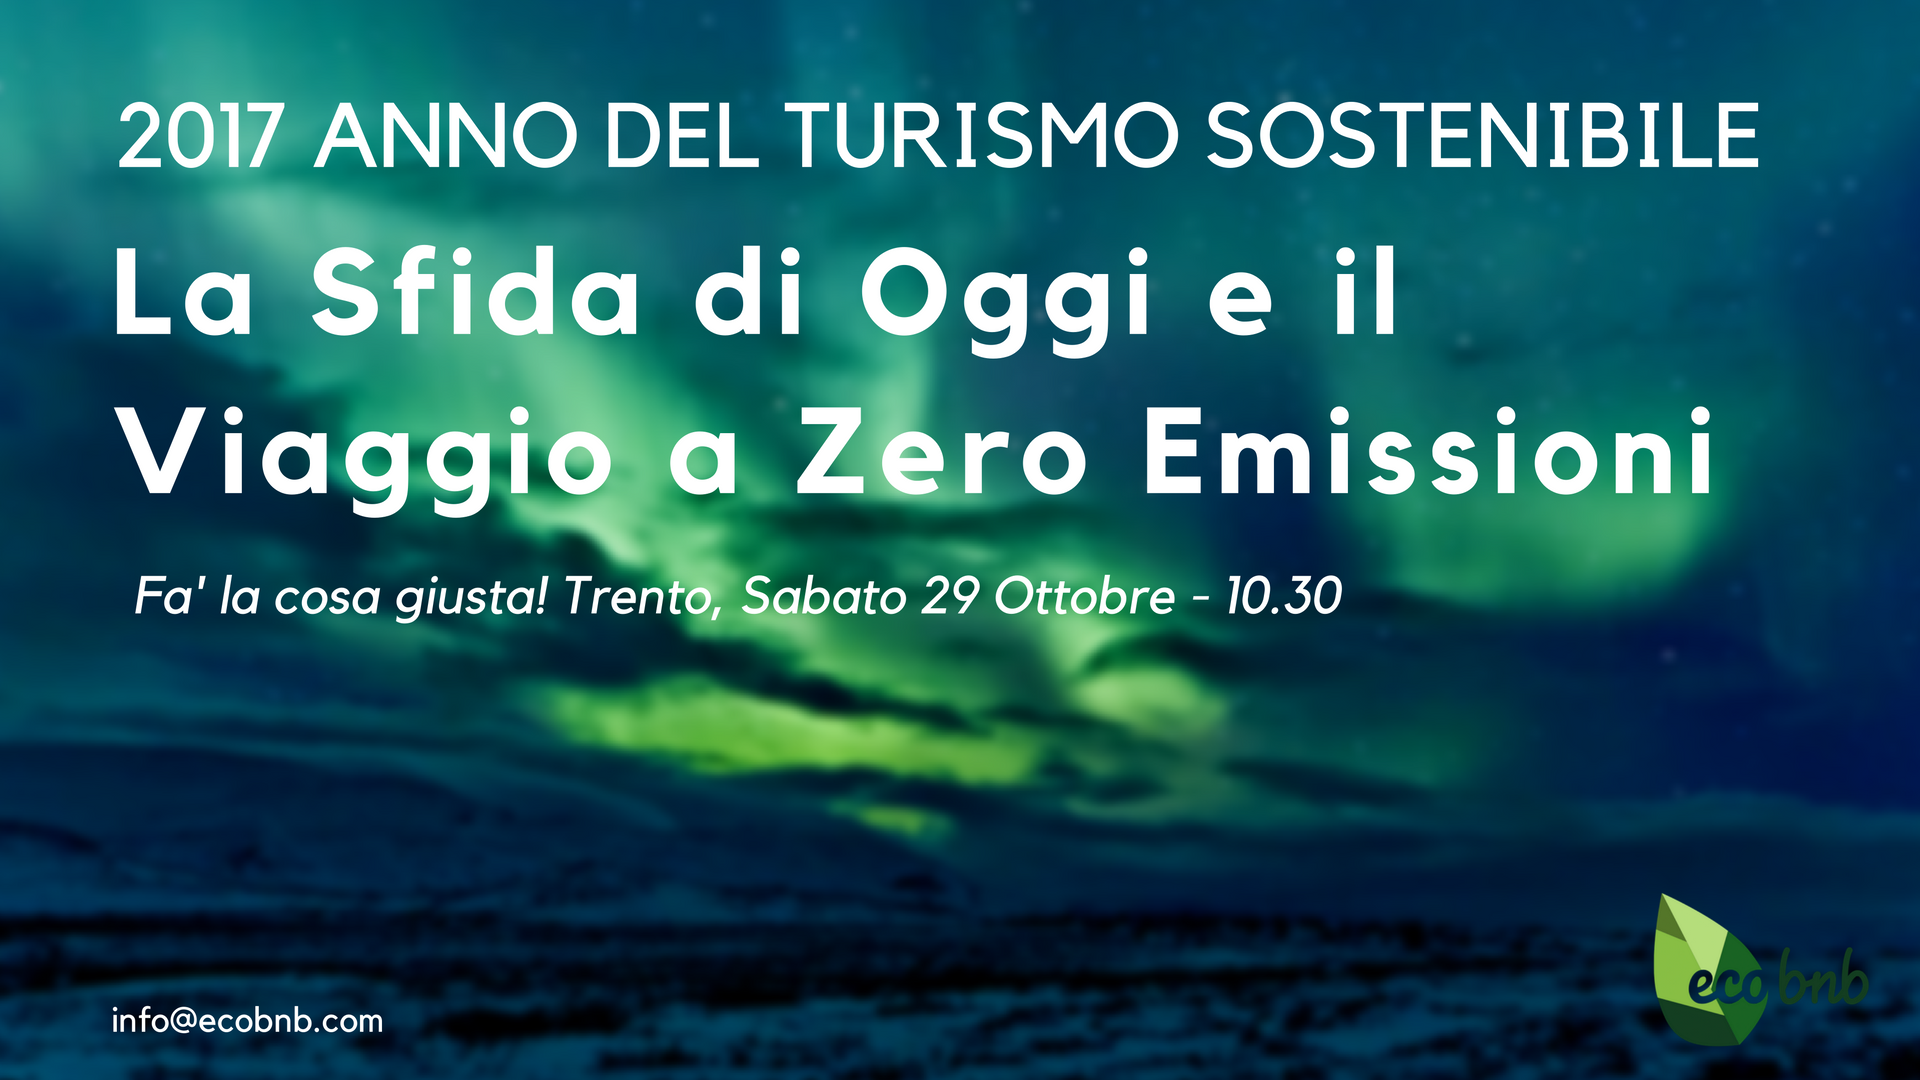 La sfida di oggi e il viaggio a zero emissioni, conferenza a fa' la cosa giusta! Trento